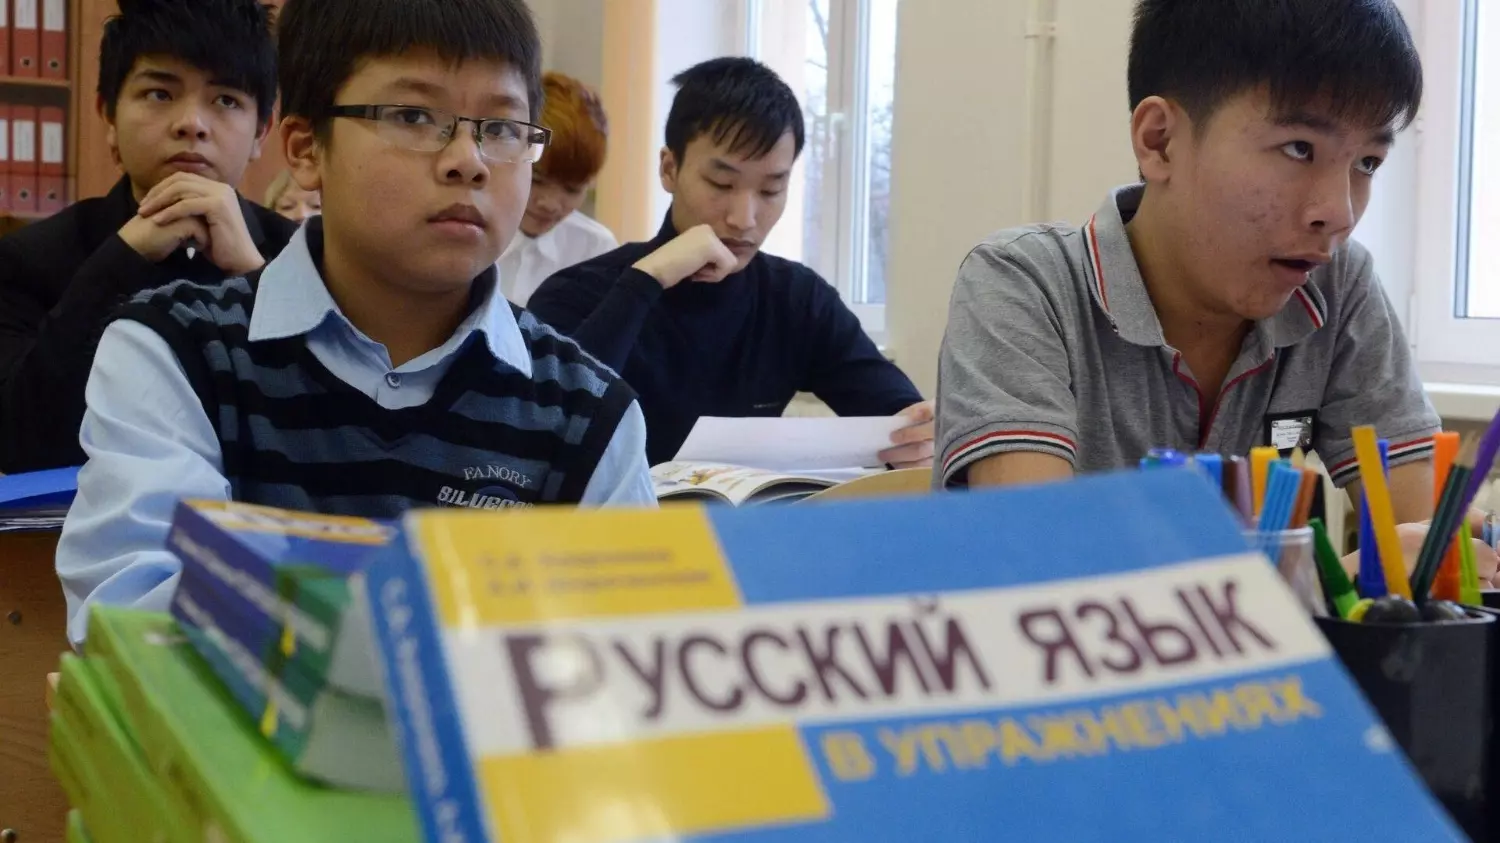 Для многих детей мигрантов русский преподают как иностранный